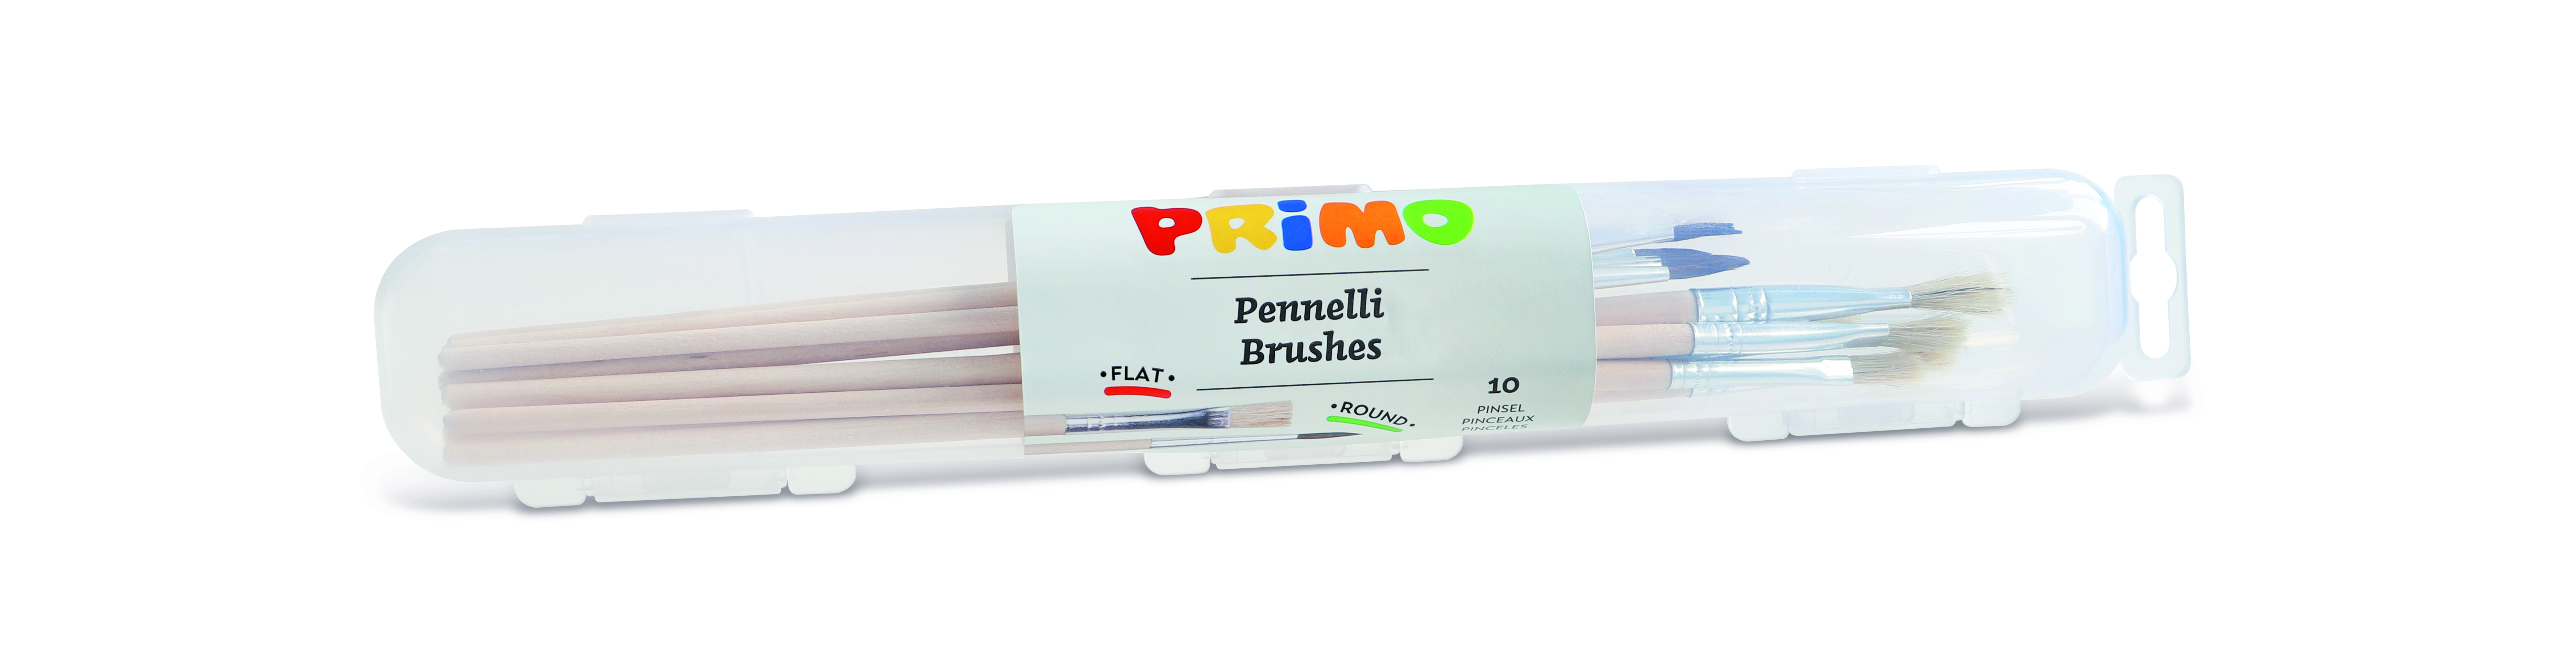 PRIMO brush case set